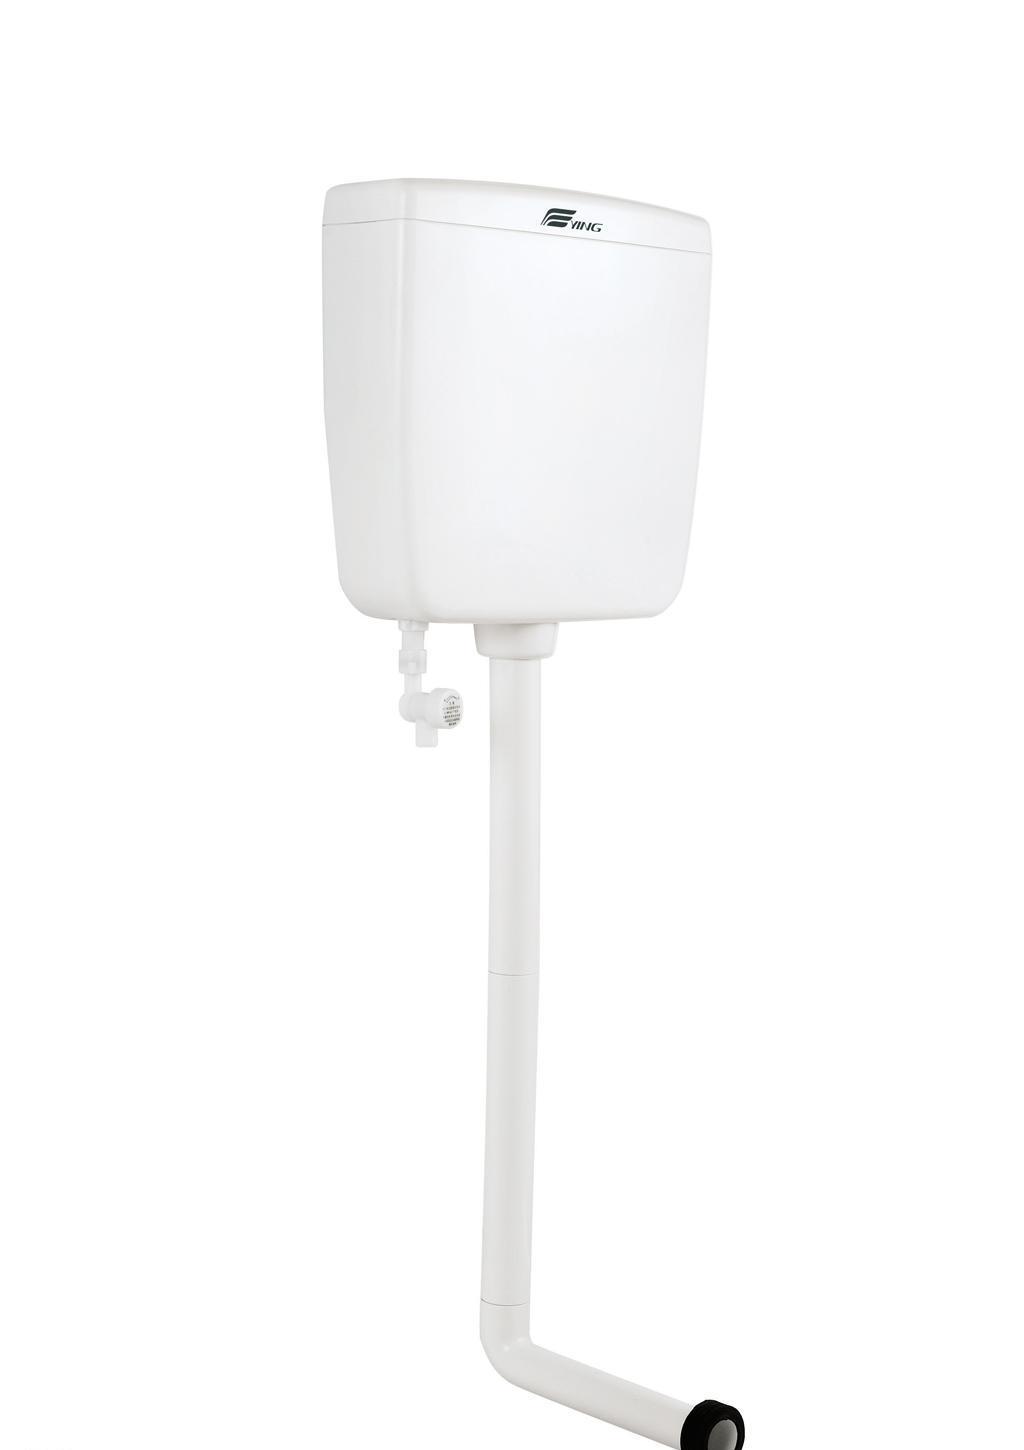 鹰卫浴塑料水箱 SP-1003产品价格_图片_报价